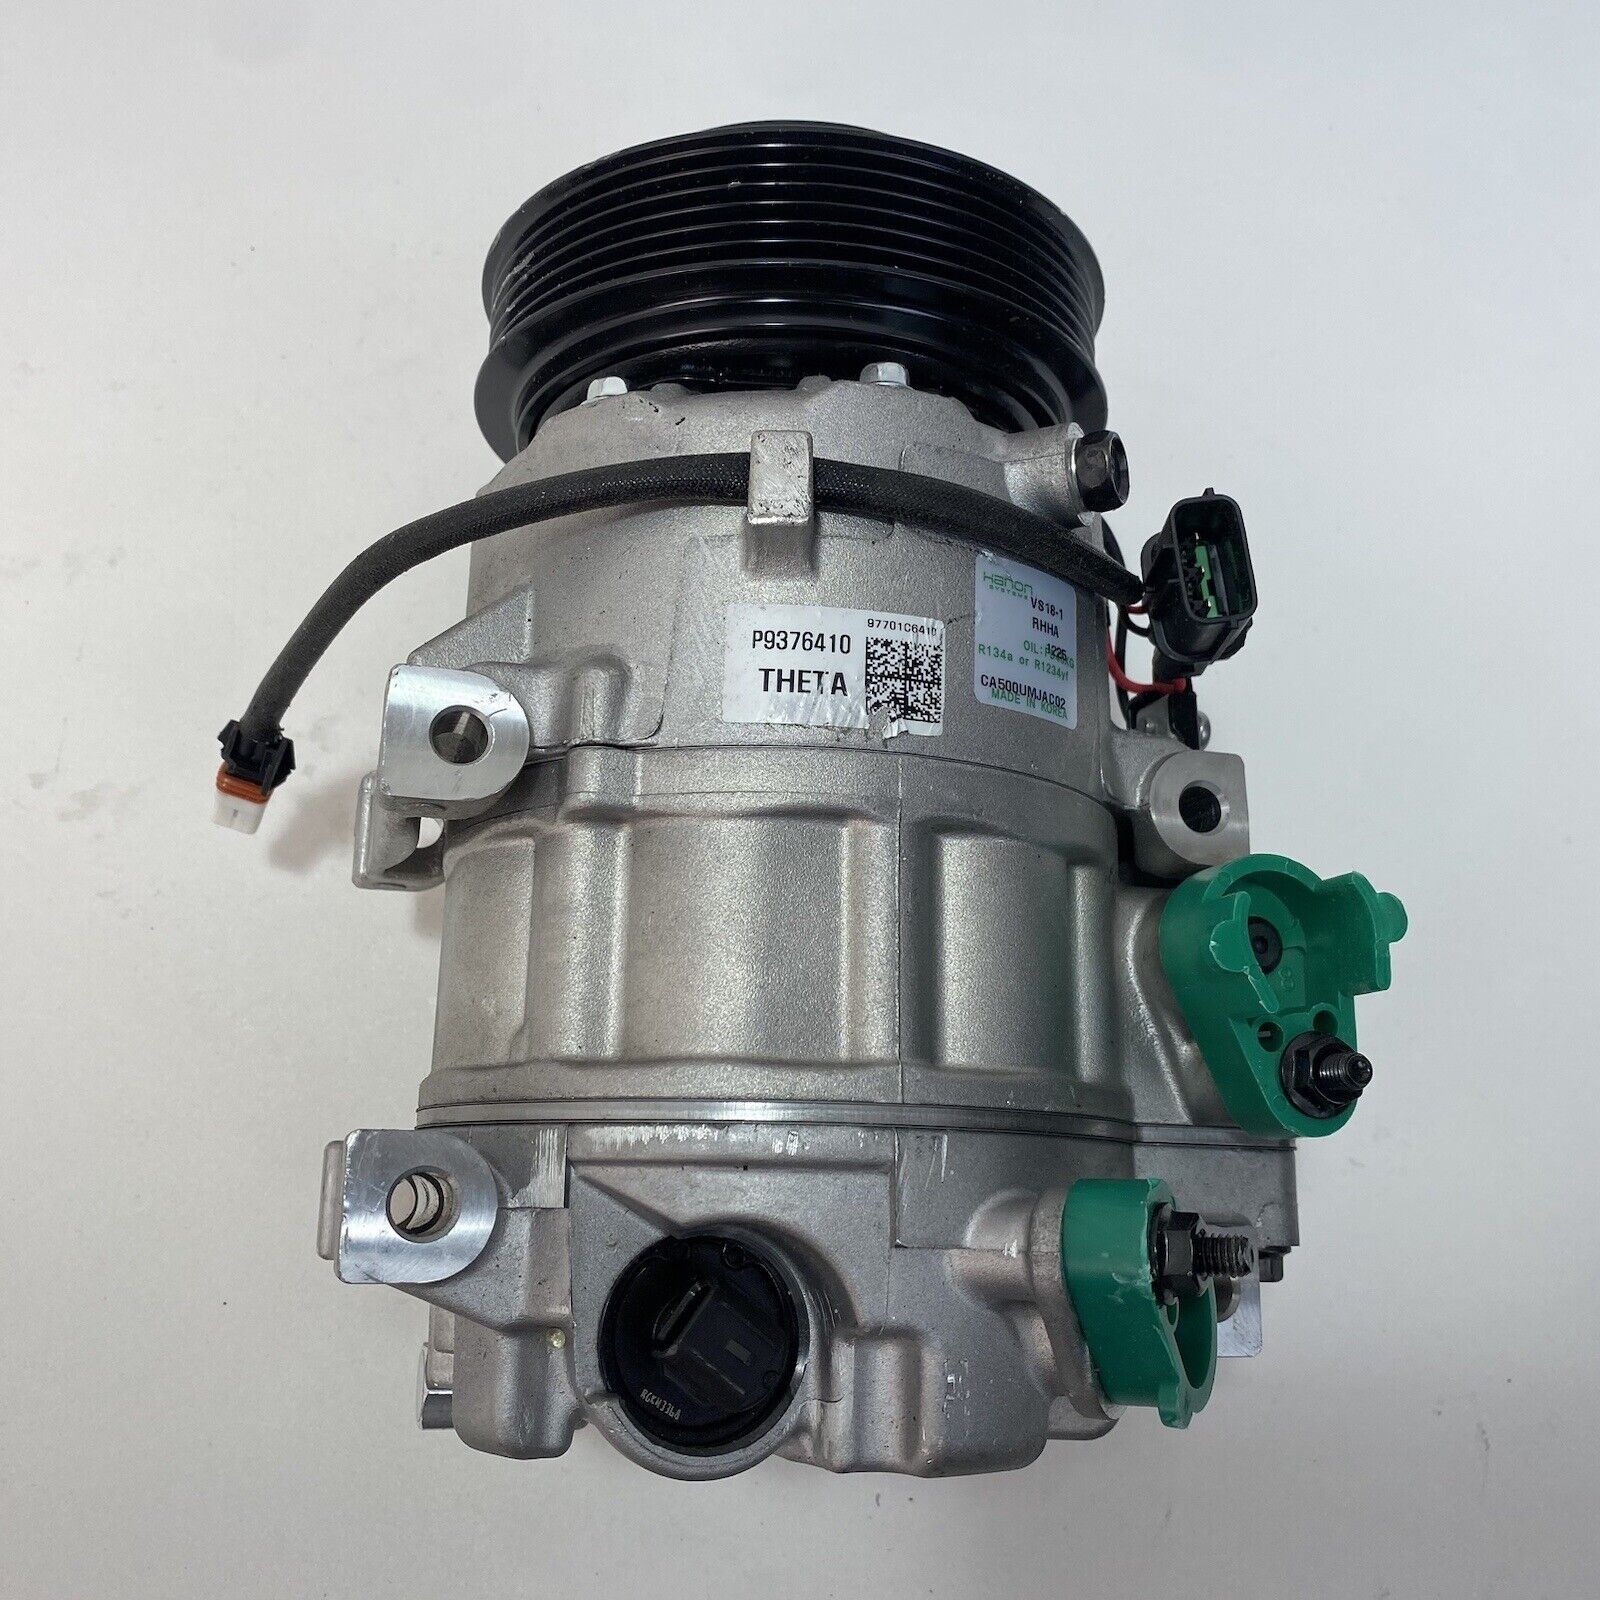 Genuine Hanon A/C Compressor VS18-1 RHHA 97701-C6410